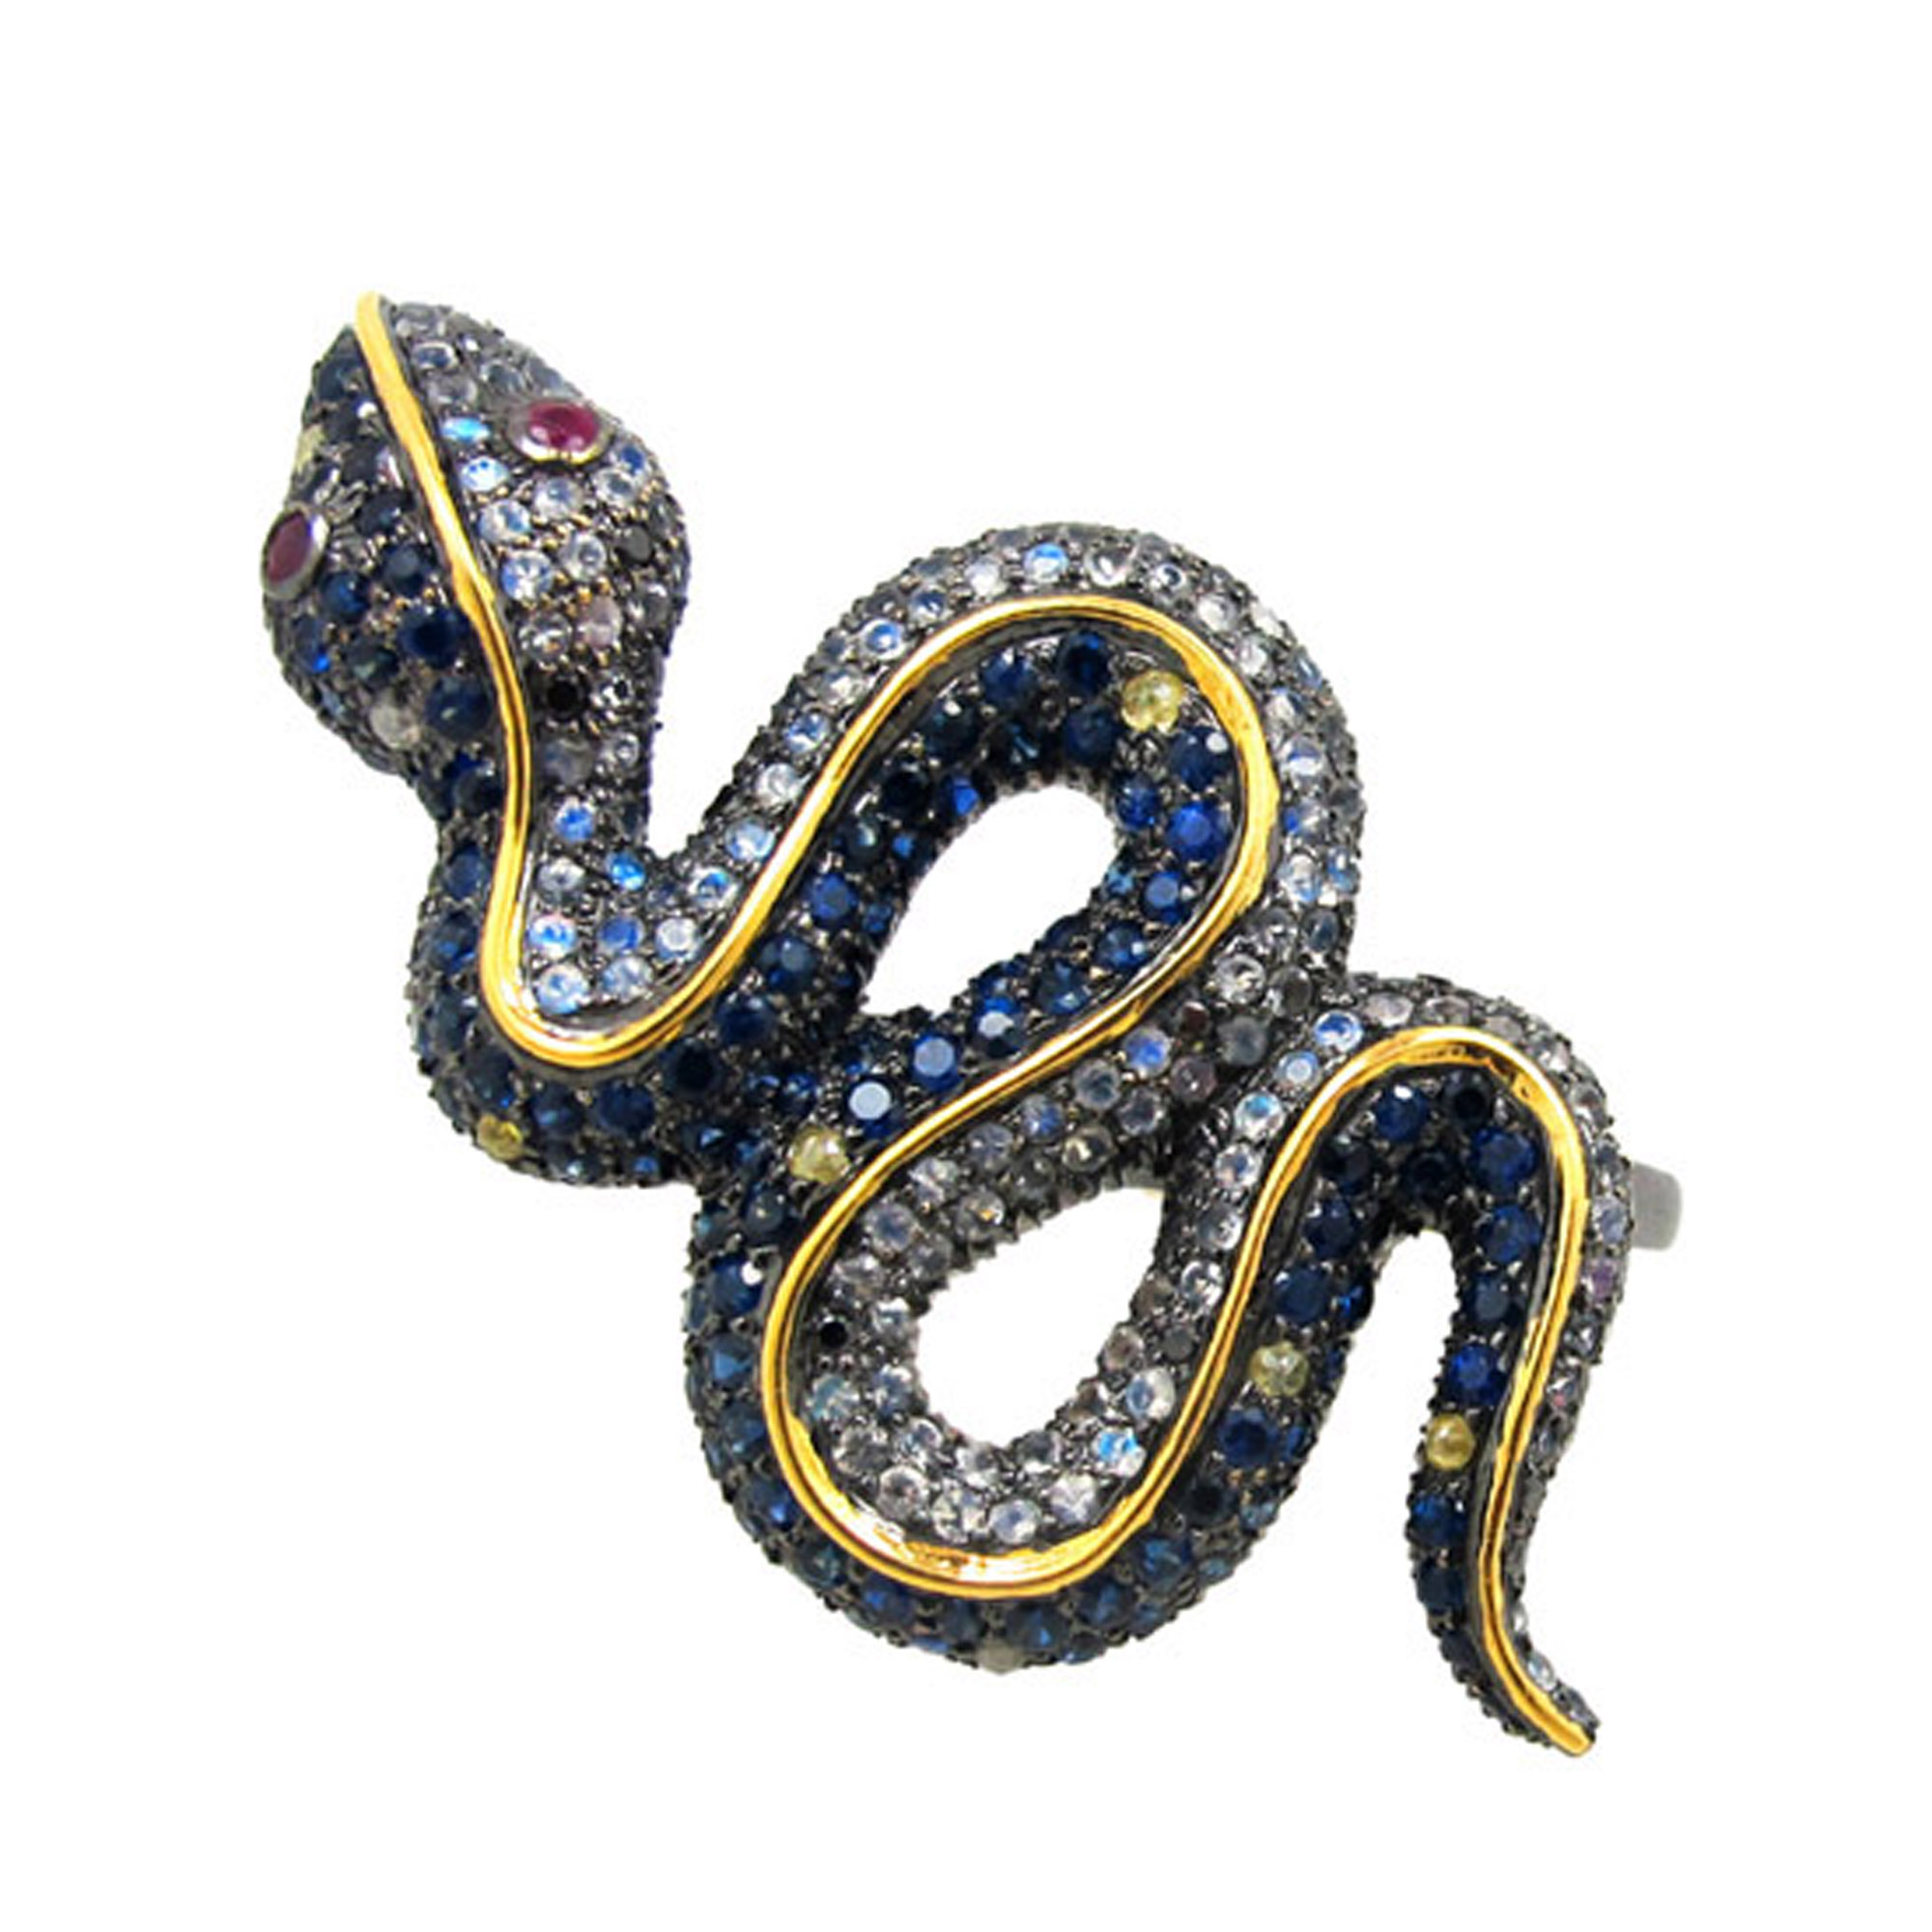 Two finger snake ring 14k gold line design multi gemstone jewelry